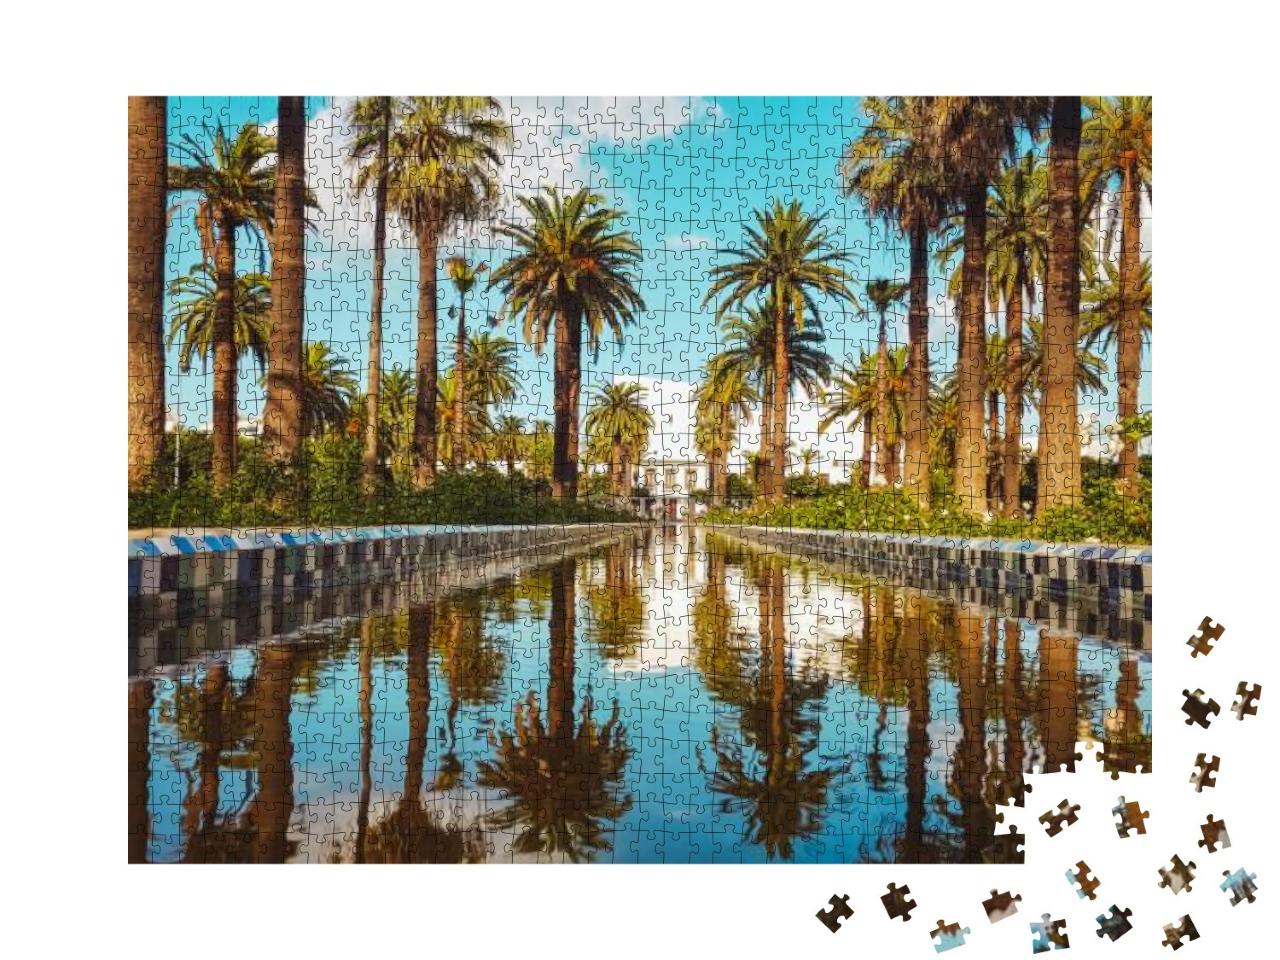 The Arab League Park Parc De La Ligue Arabe is an Urban P... Jigsaw Puzzle with 1000 pieces